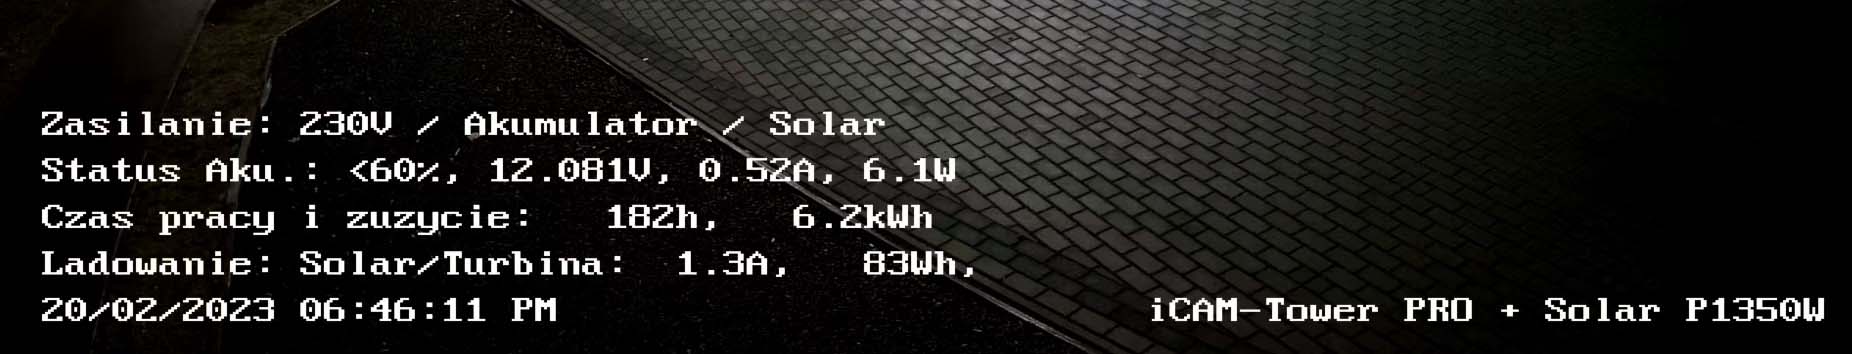 Obraz z kamery z informacjami tekstowymi i parametrami elektrowni solarnej iCAM-Solar365